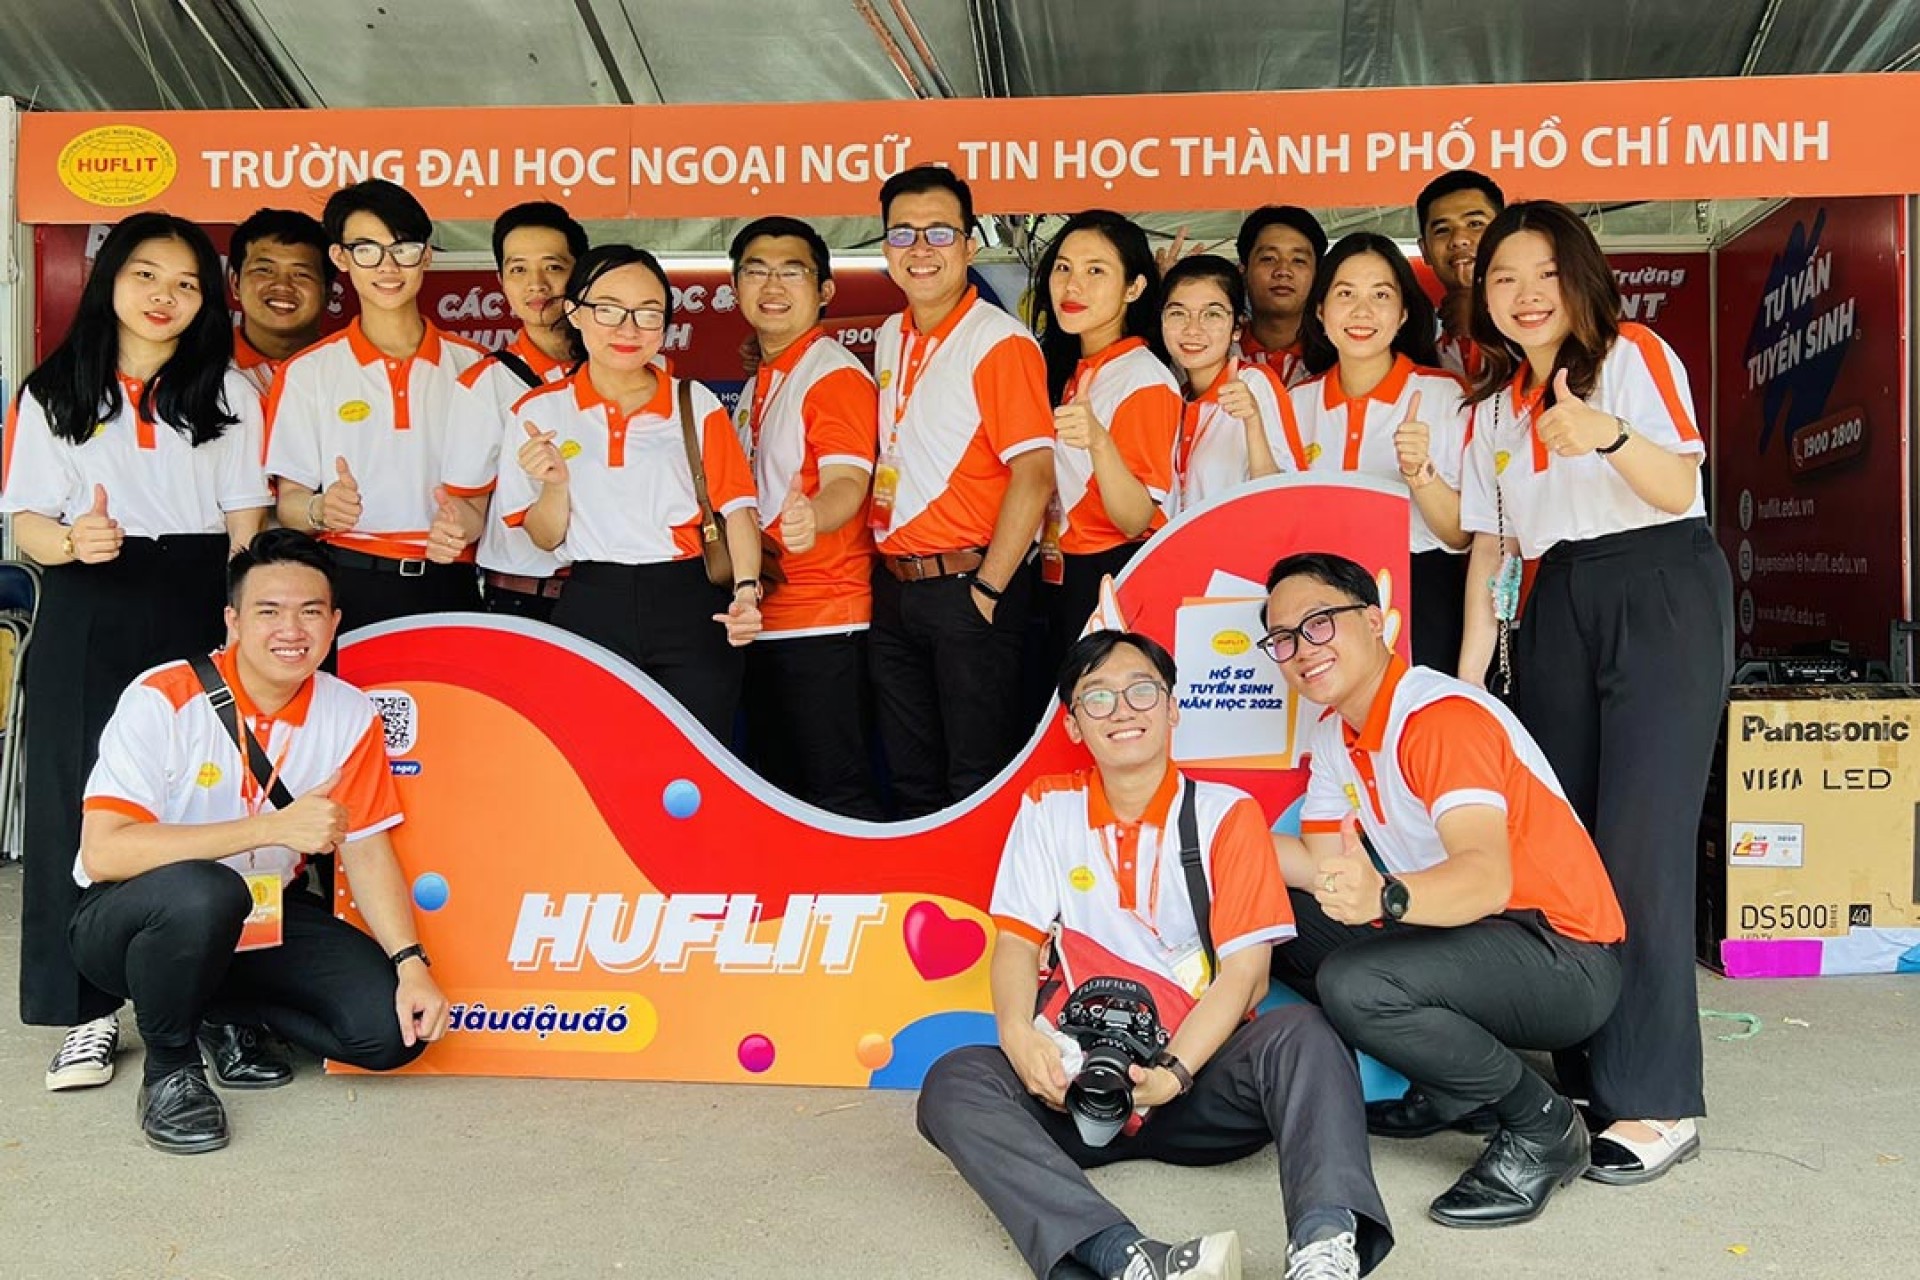 Đại học Ngoại ngữ Tin học TP HCM (HUFLIT) công bố phương án tuyển sinh 2022